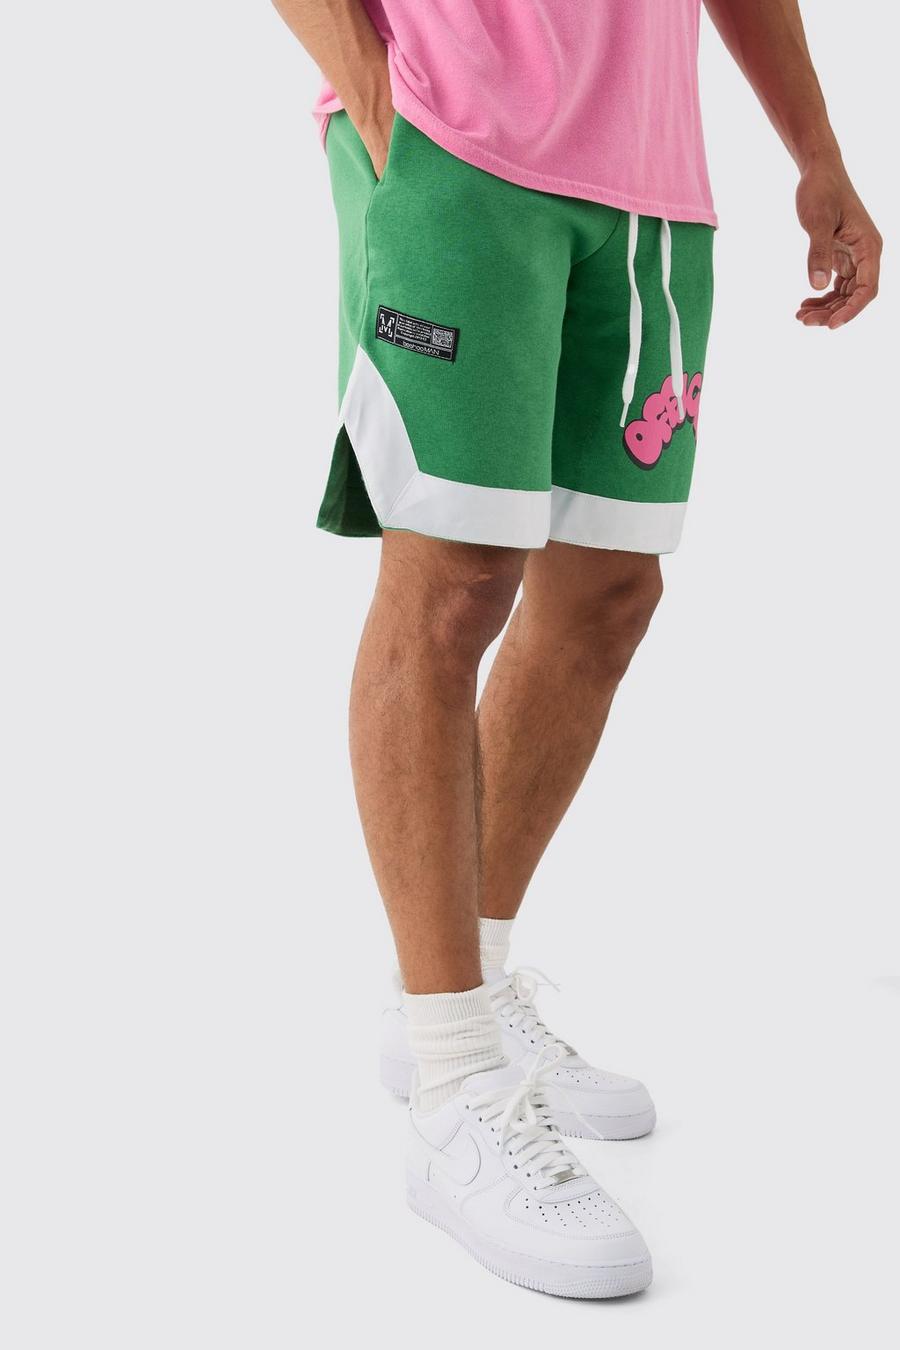 Pantalón corto Official de baloncesto con cordones, Forest